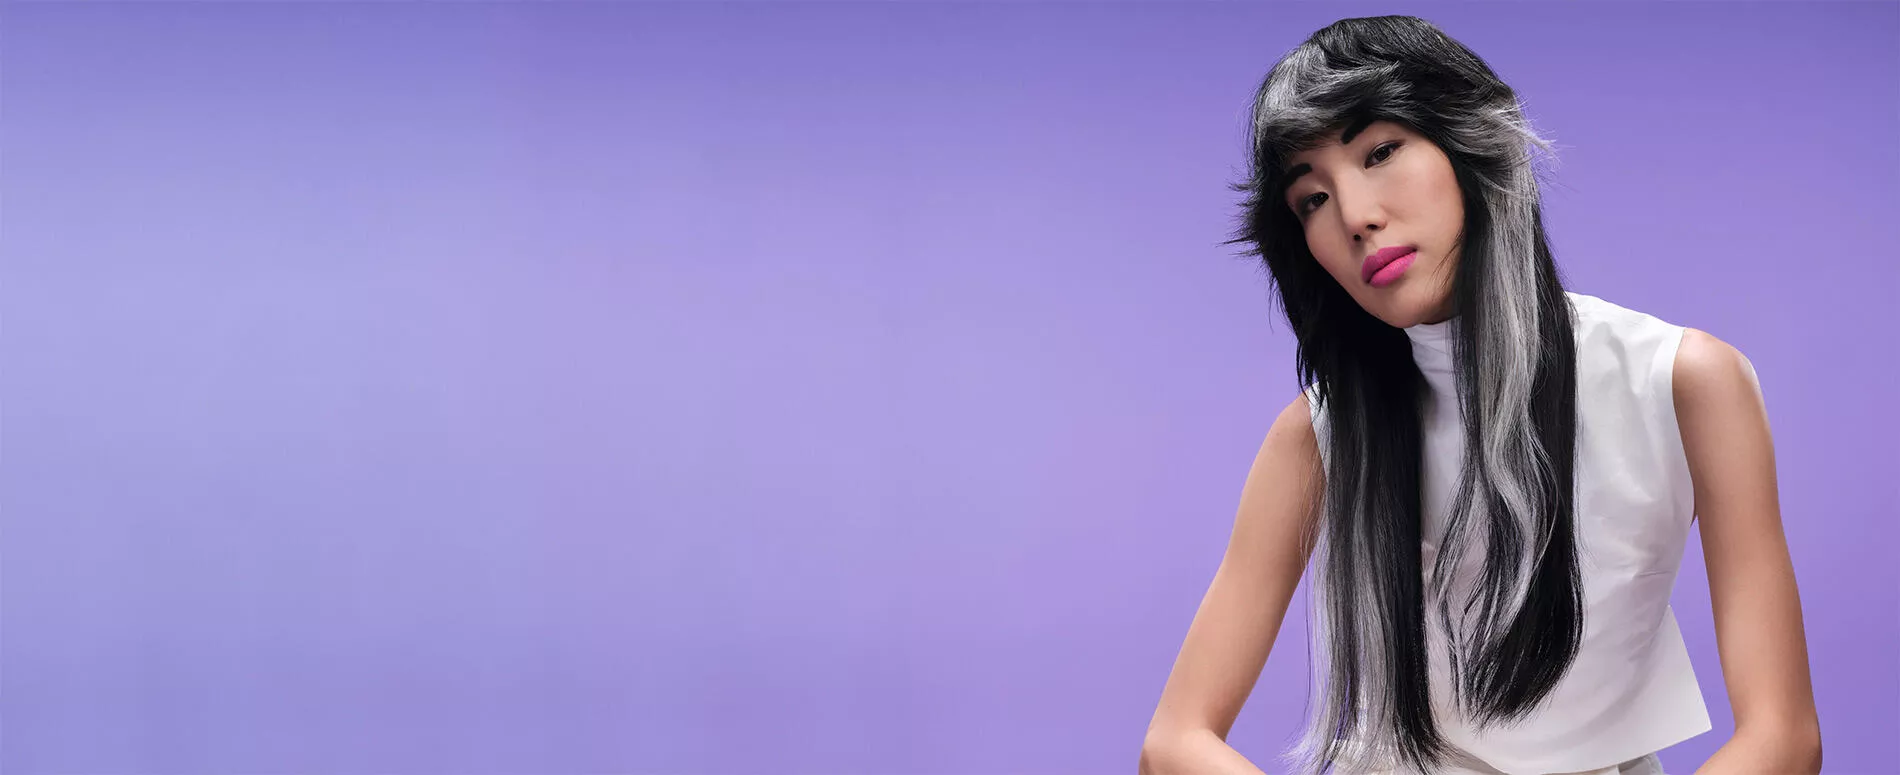 Modella dai capelli neri e bianchi realizzati con Monochromatic Blocking su sfondo viola